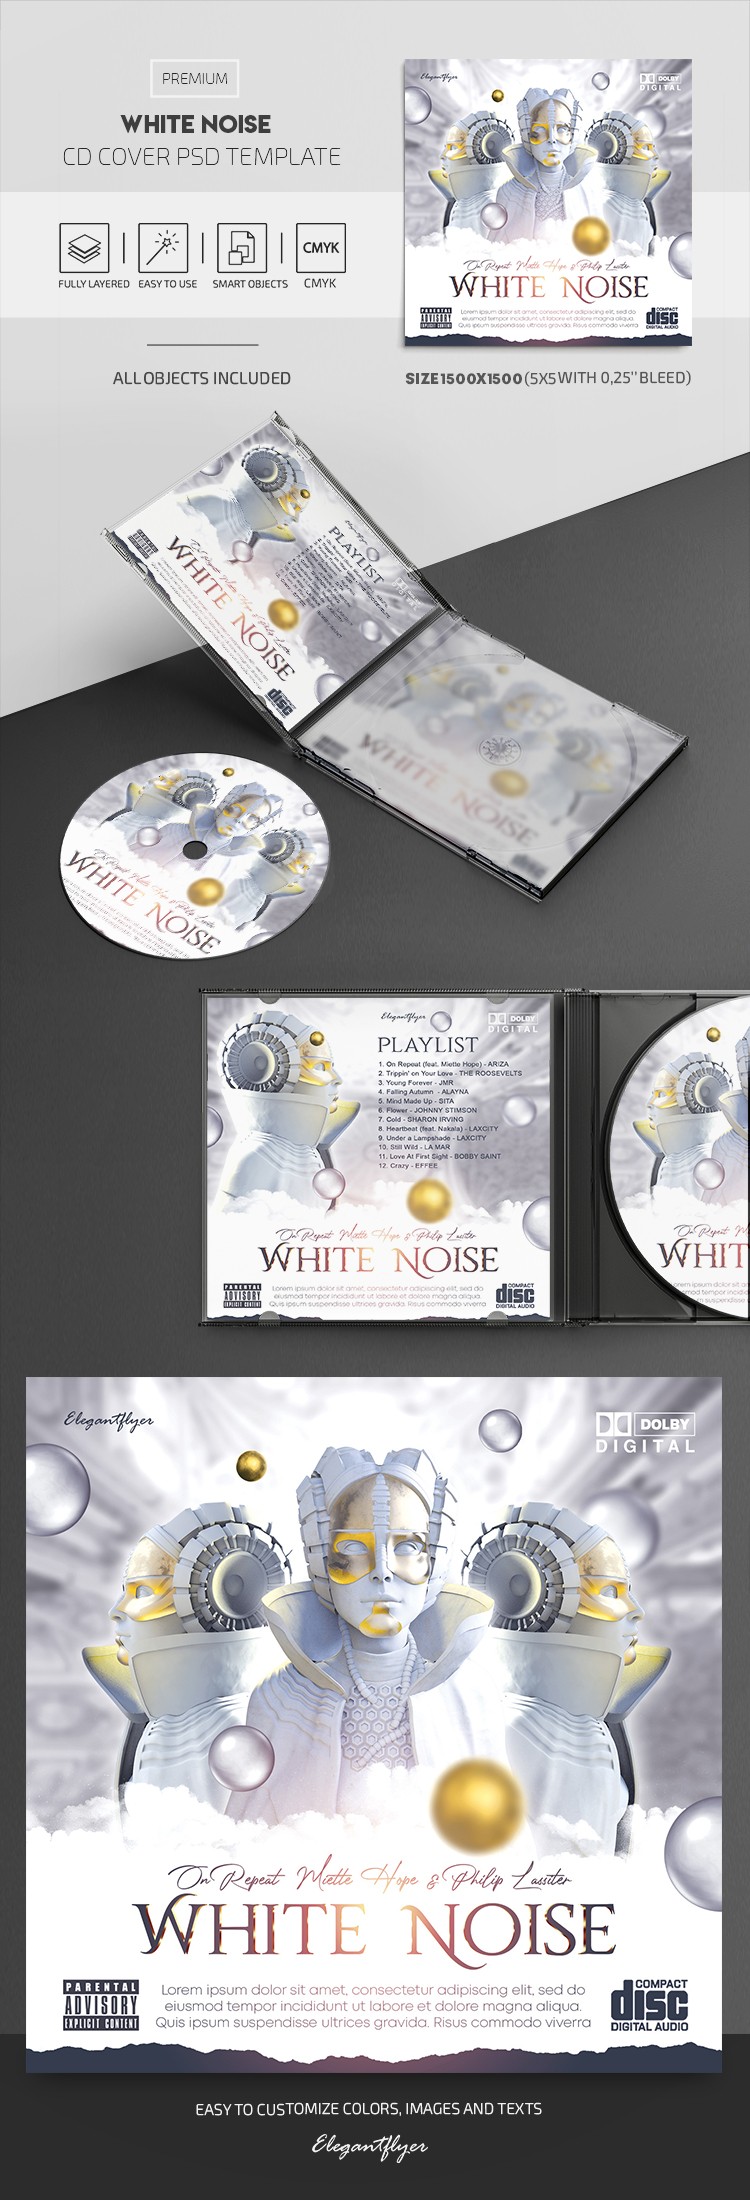 Weißes Rauschen CD Cover by ElegantFlyer